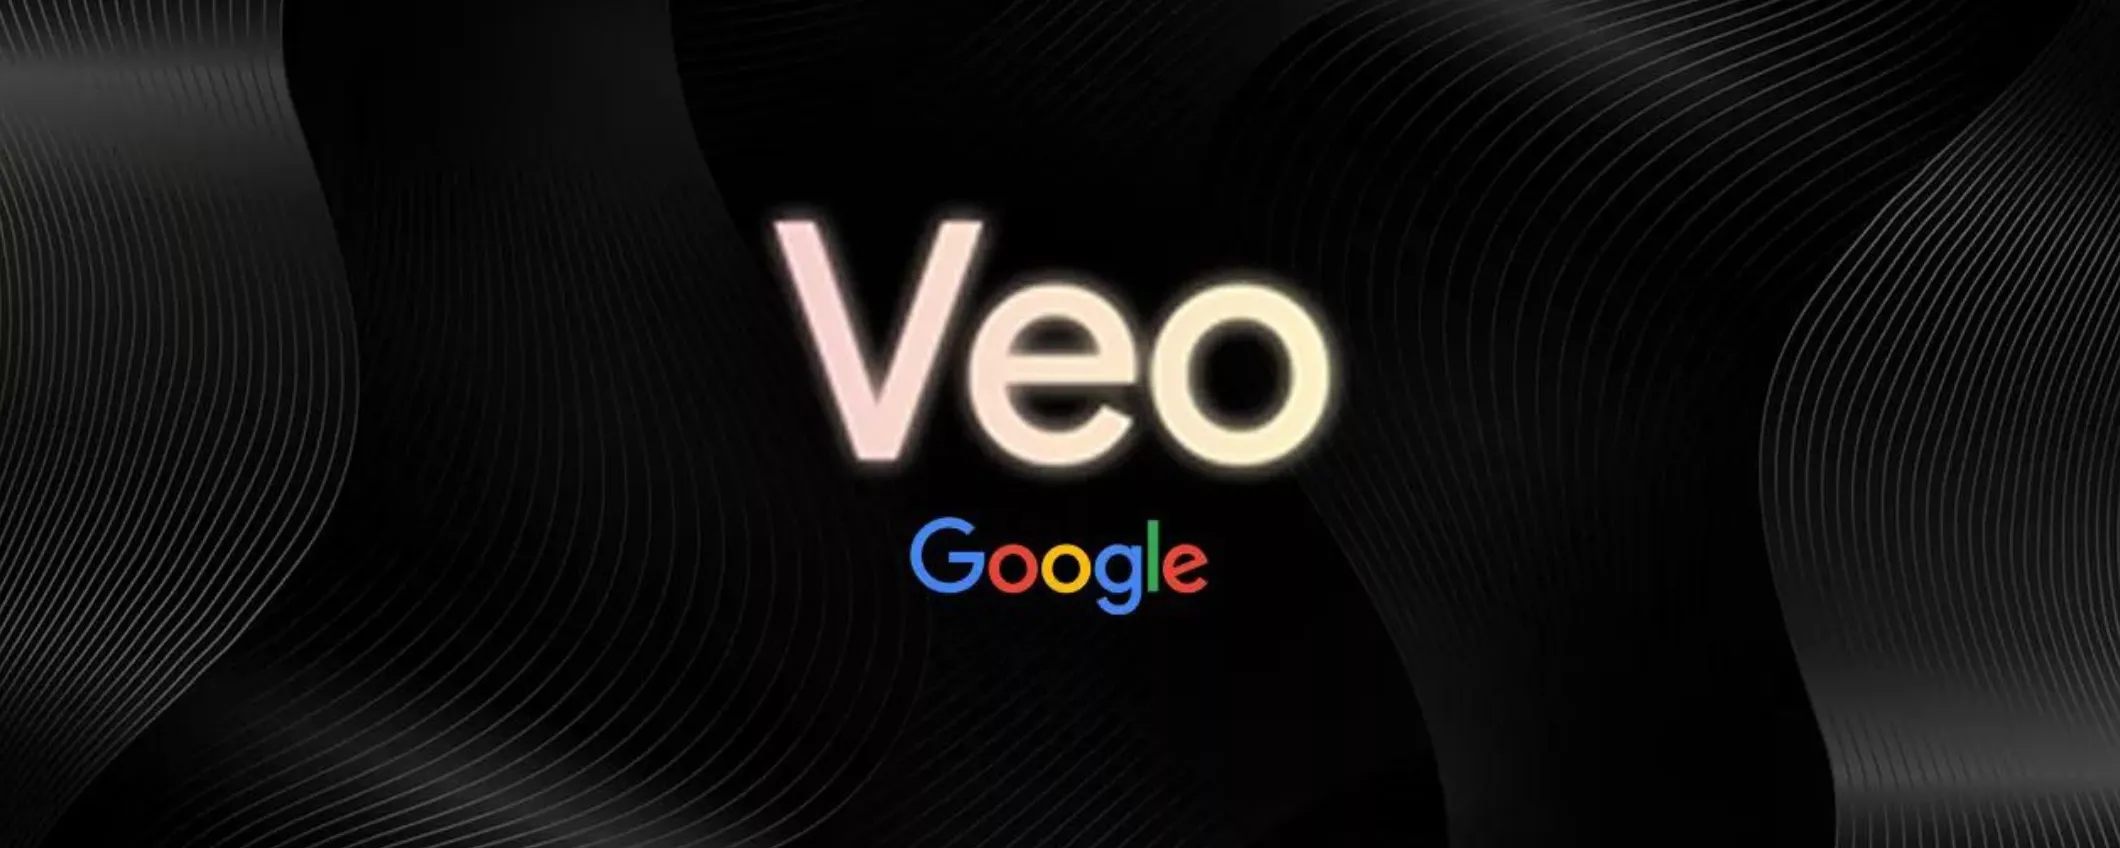 Google Veo, la nuova IA che genera video super realistici: come accedere al servizio